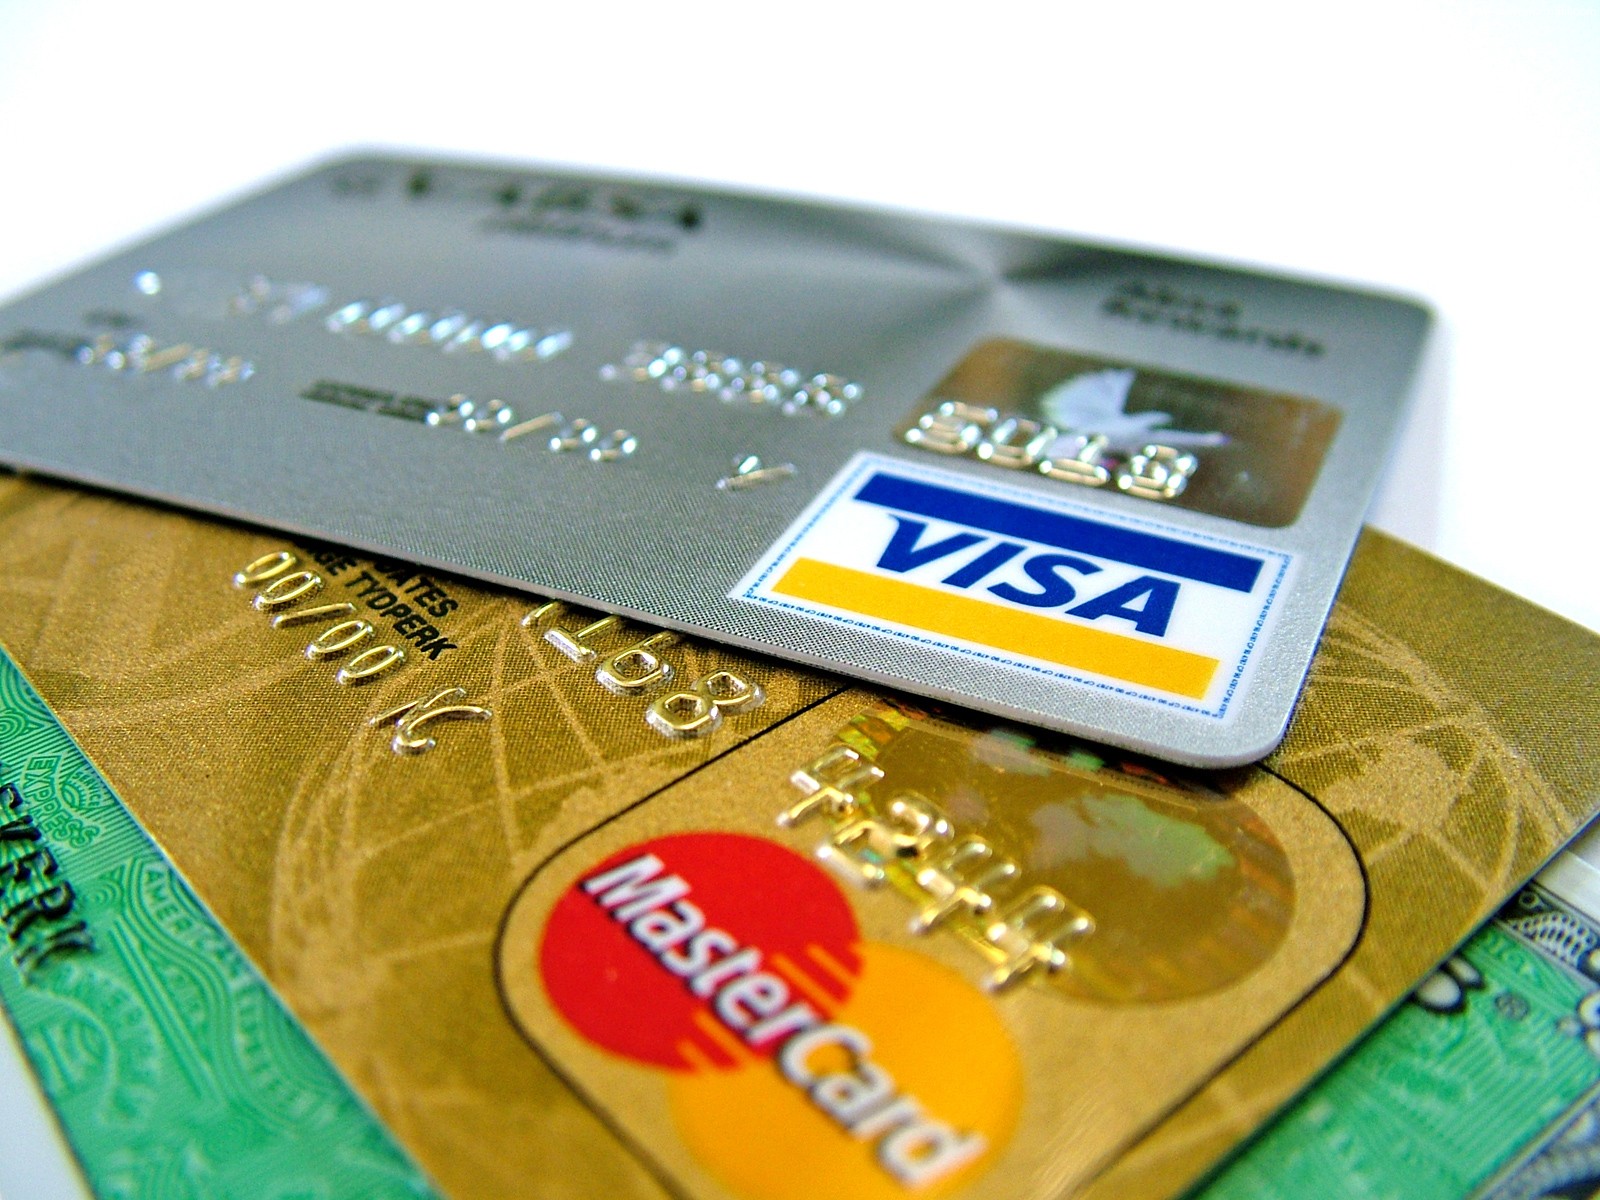 kredi karti kullanmak gunah midir